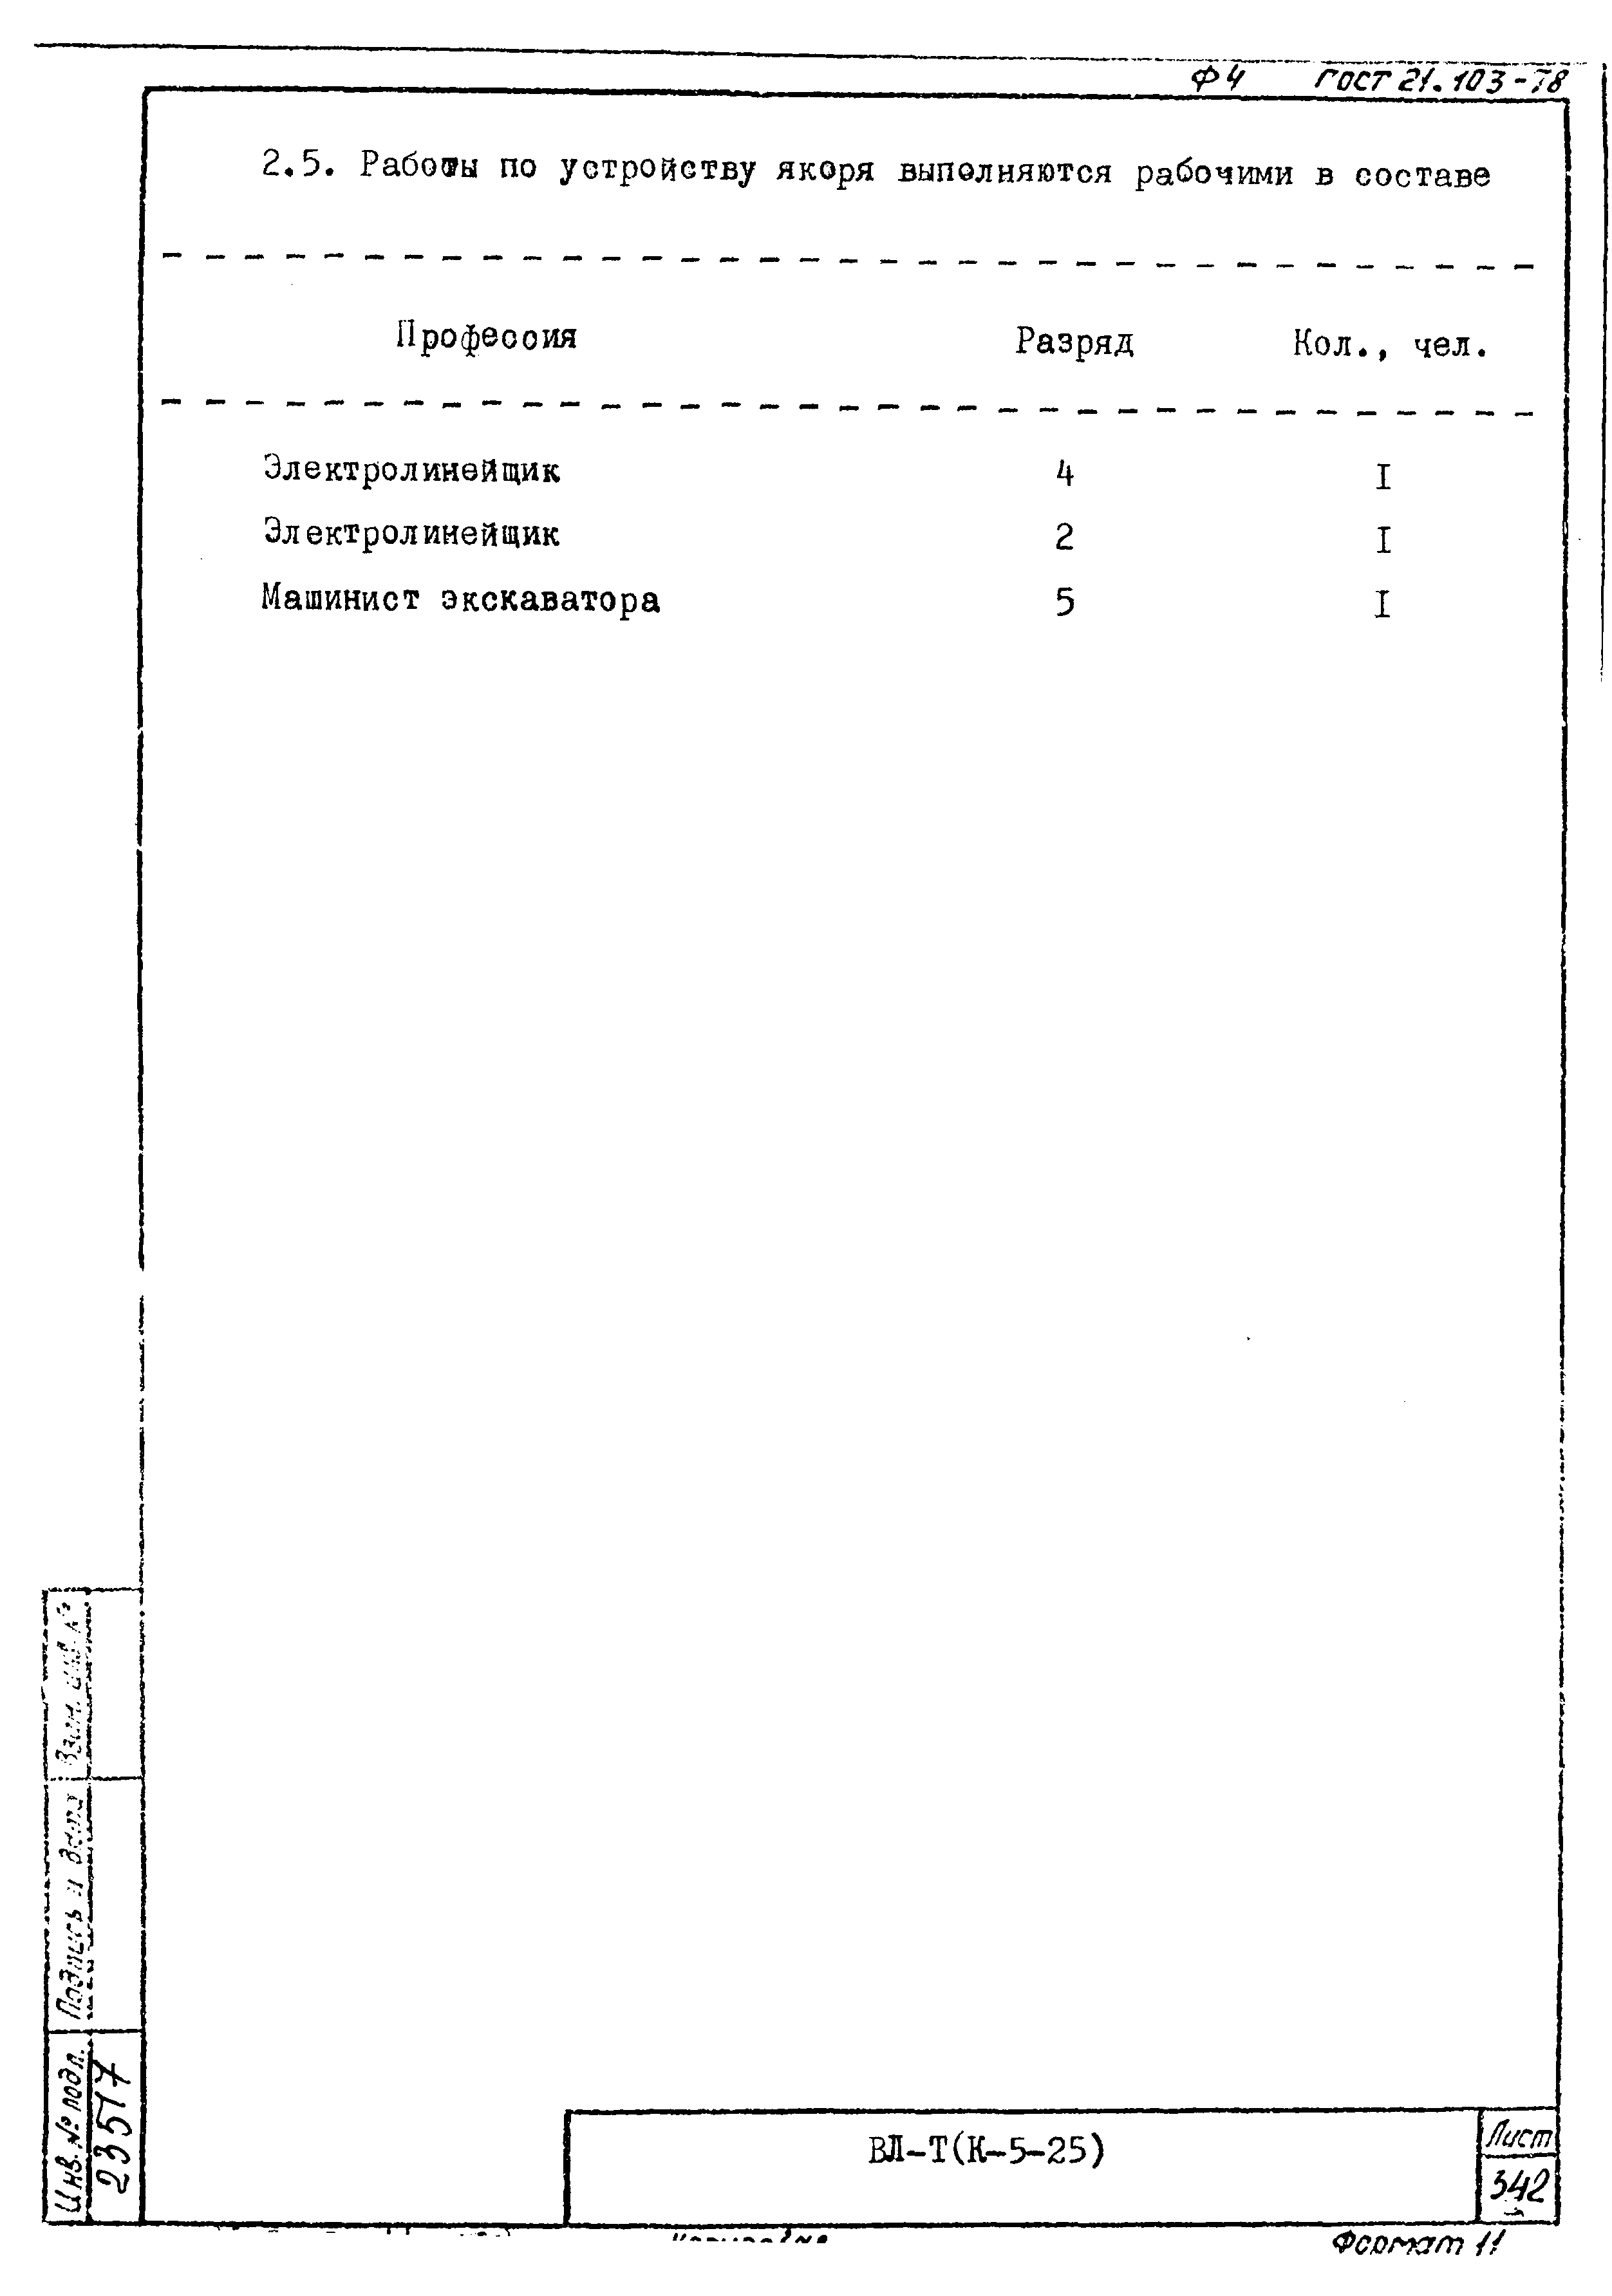 Технологическая карта К-5-25-36